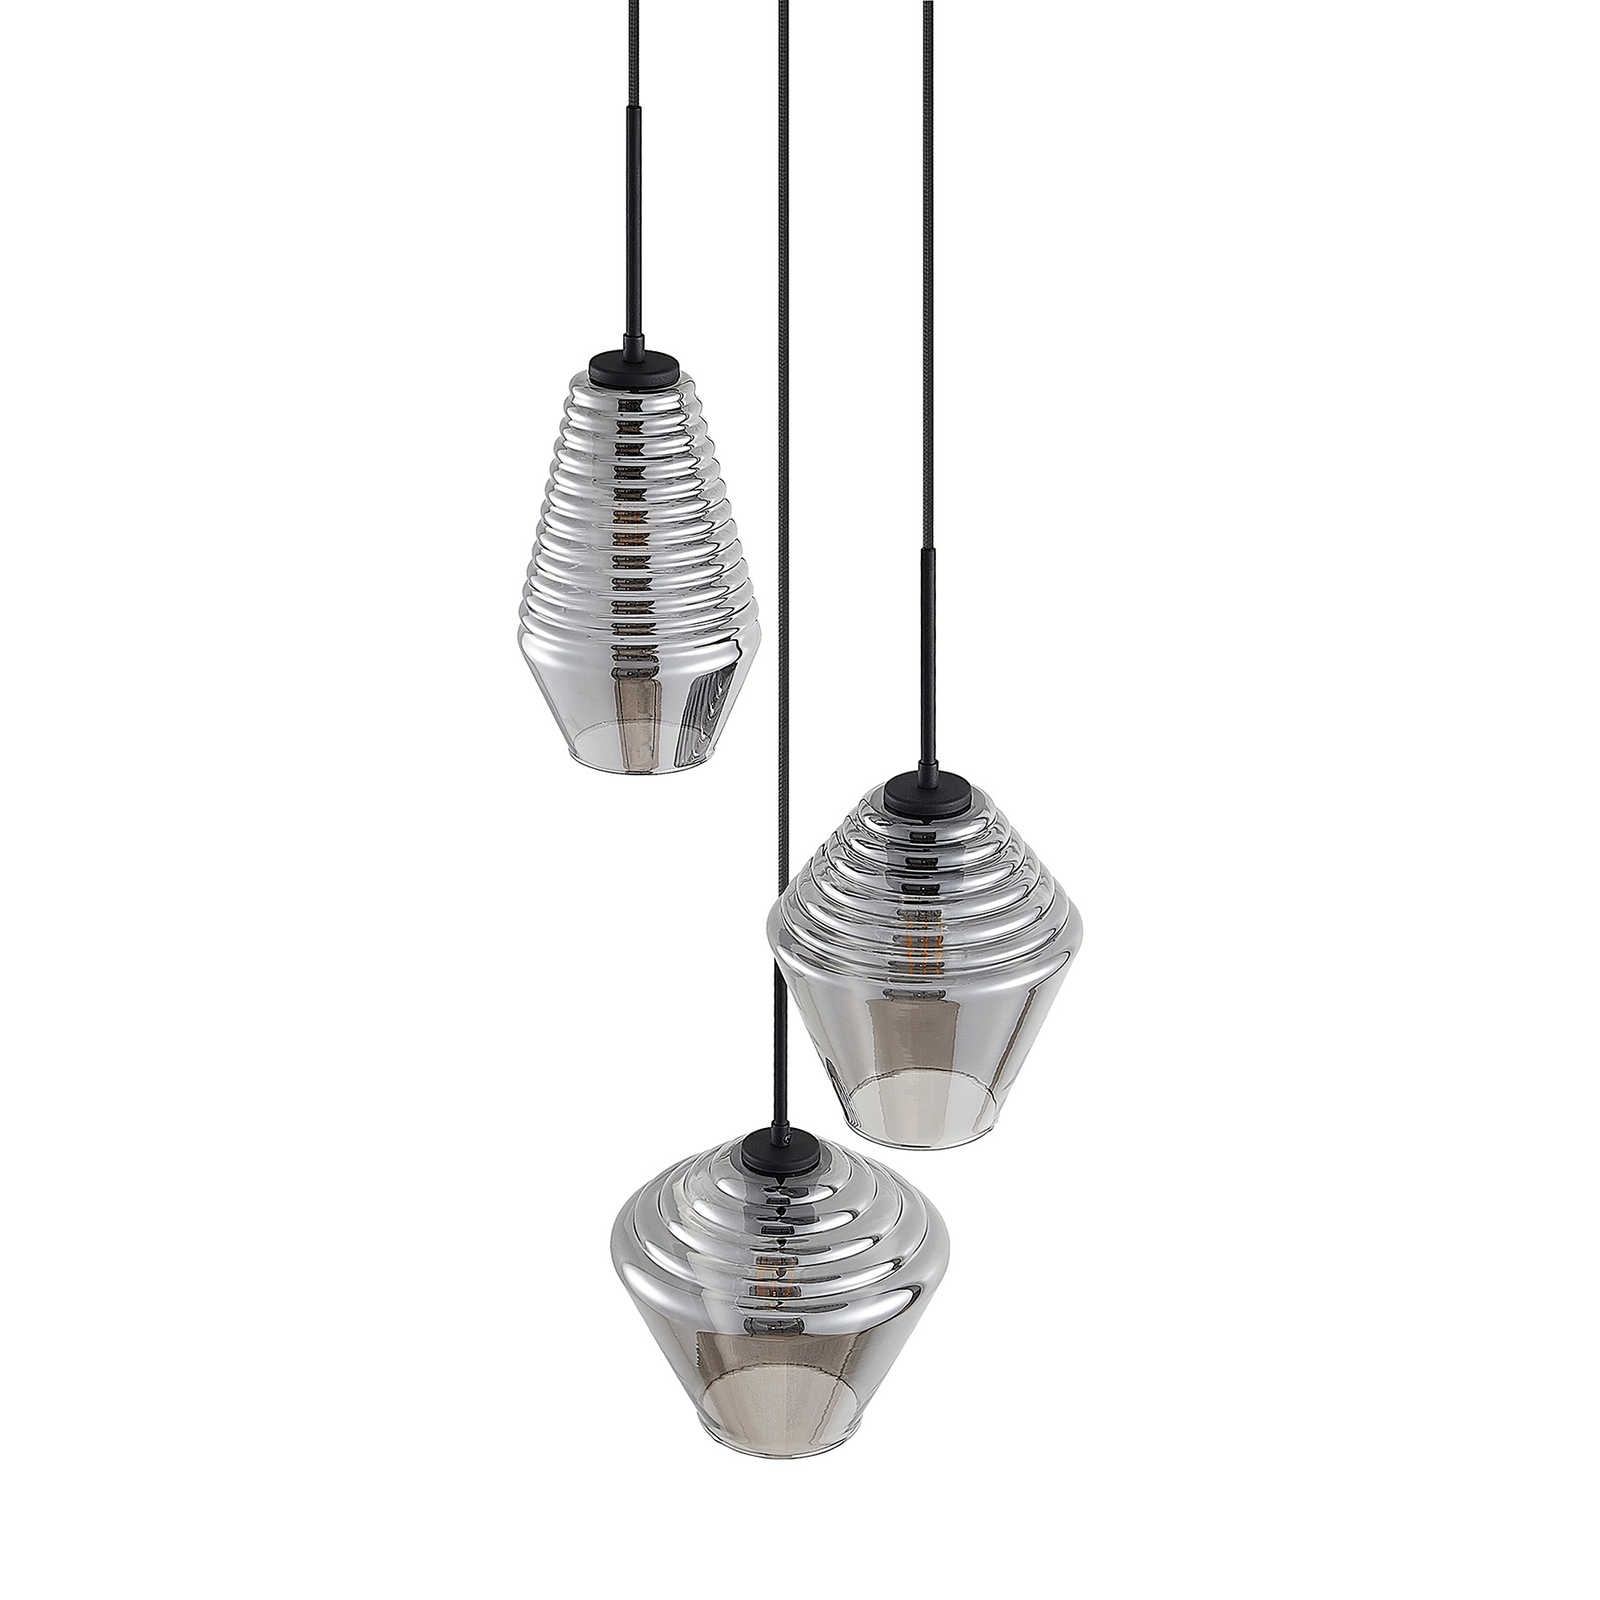 Lindby Ekkis hanglamp, 3-lamps, rond, rookgrijs